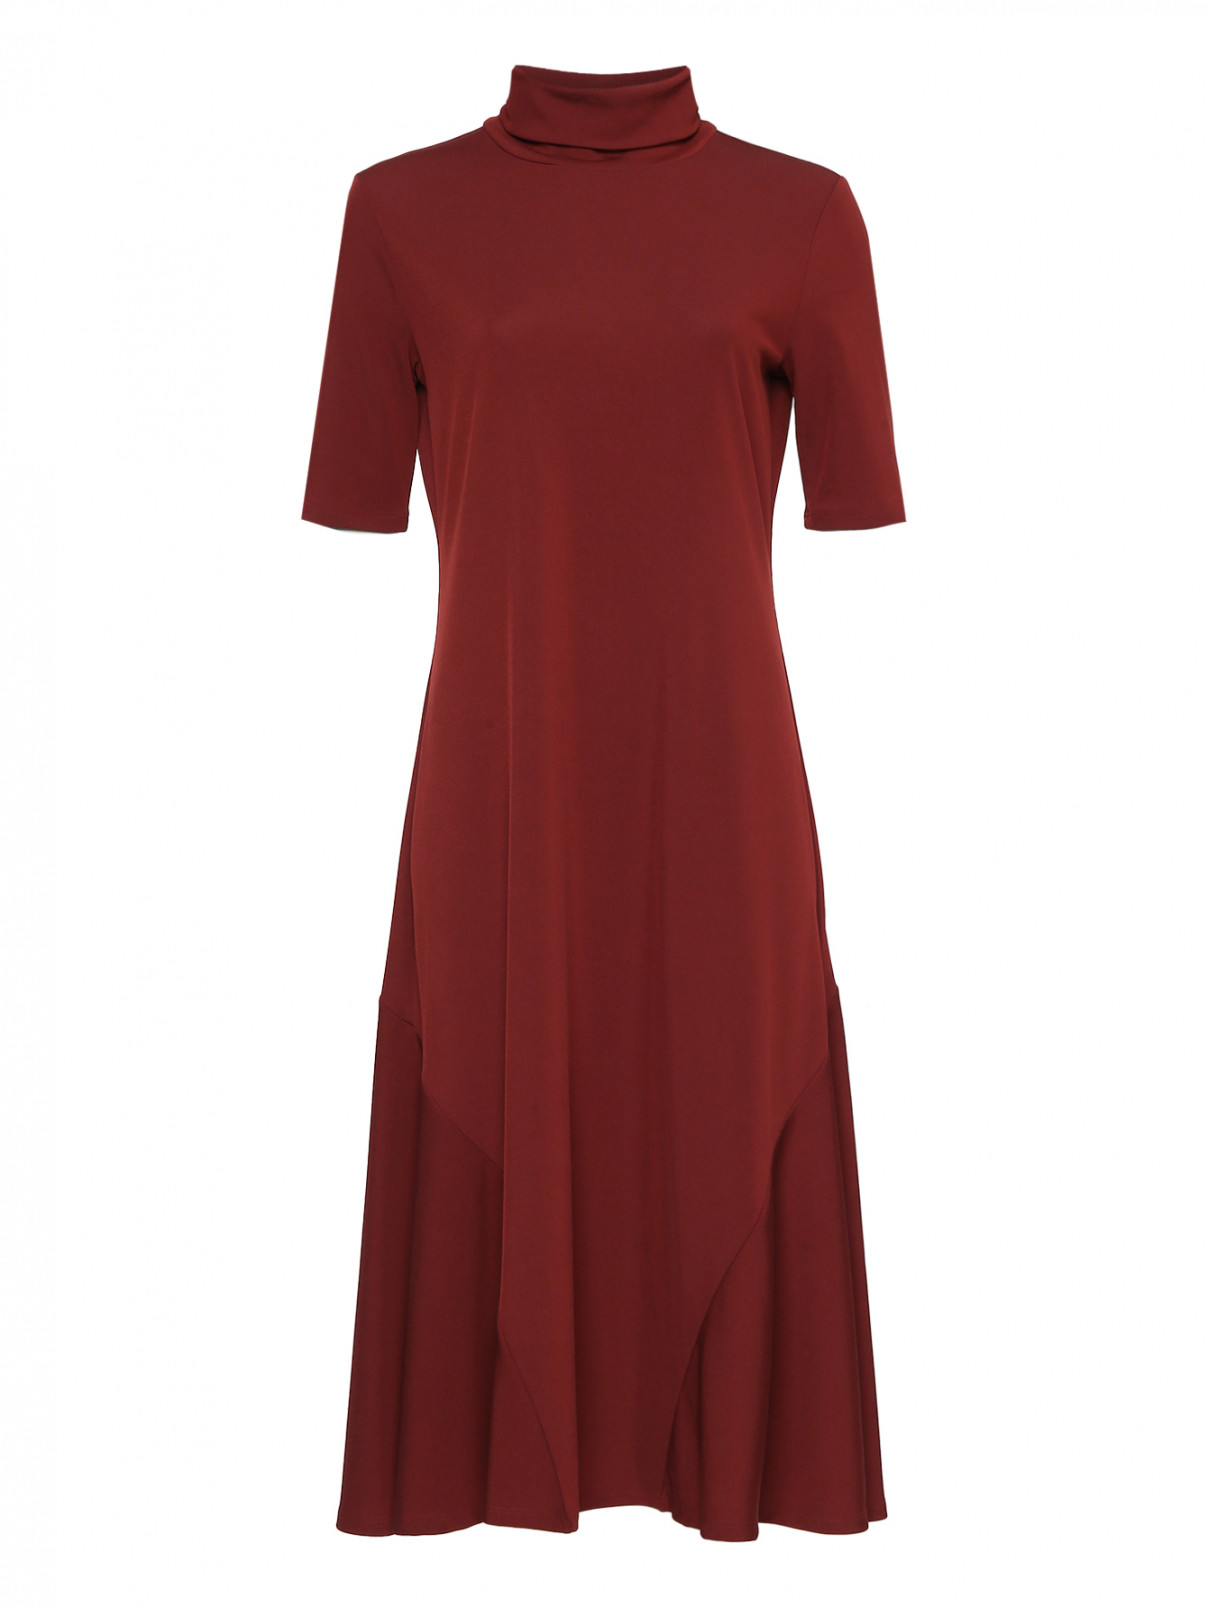 Трикотажное платье-миди с короткими рукавами Max Mara  –  Общий вид  – Цвет:  Красный